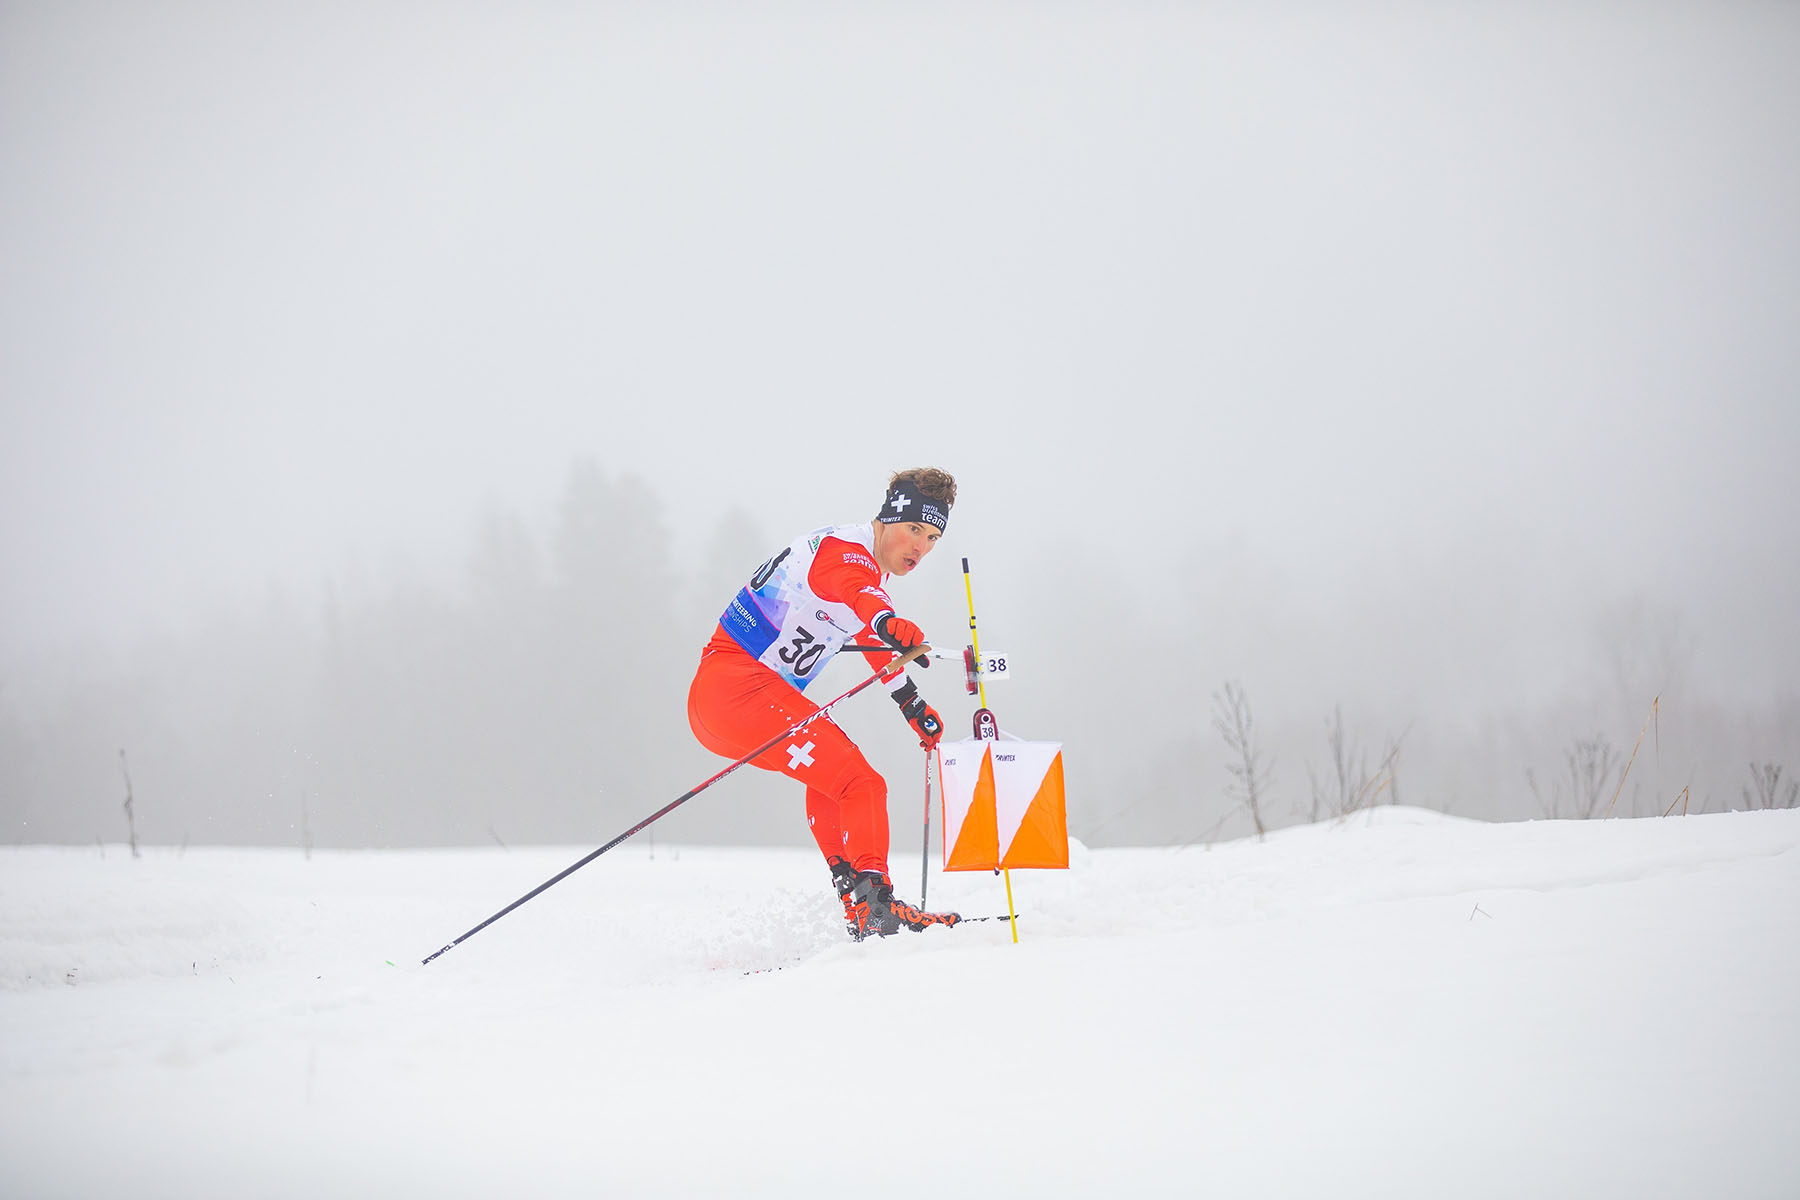 Nicola Müller hat sich als Ski-Orientierungsläufer für die Winteruniversiade 2021 qualifiziert. Er studiert Humanmedizin an der Medizinischen Fakultät der Universität Bern.   © Universitätssport der Universität Bern